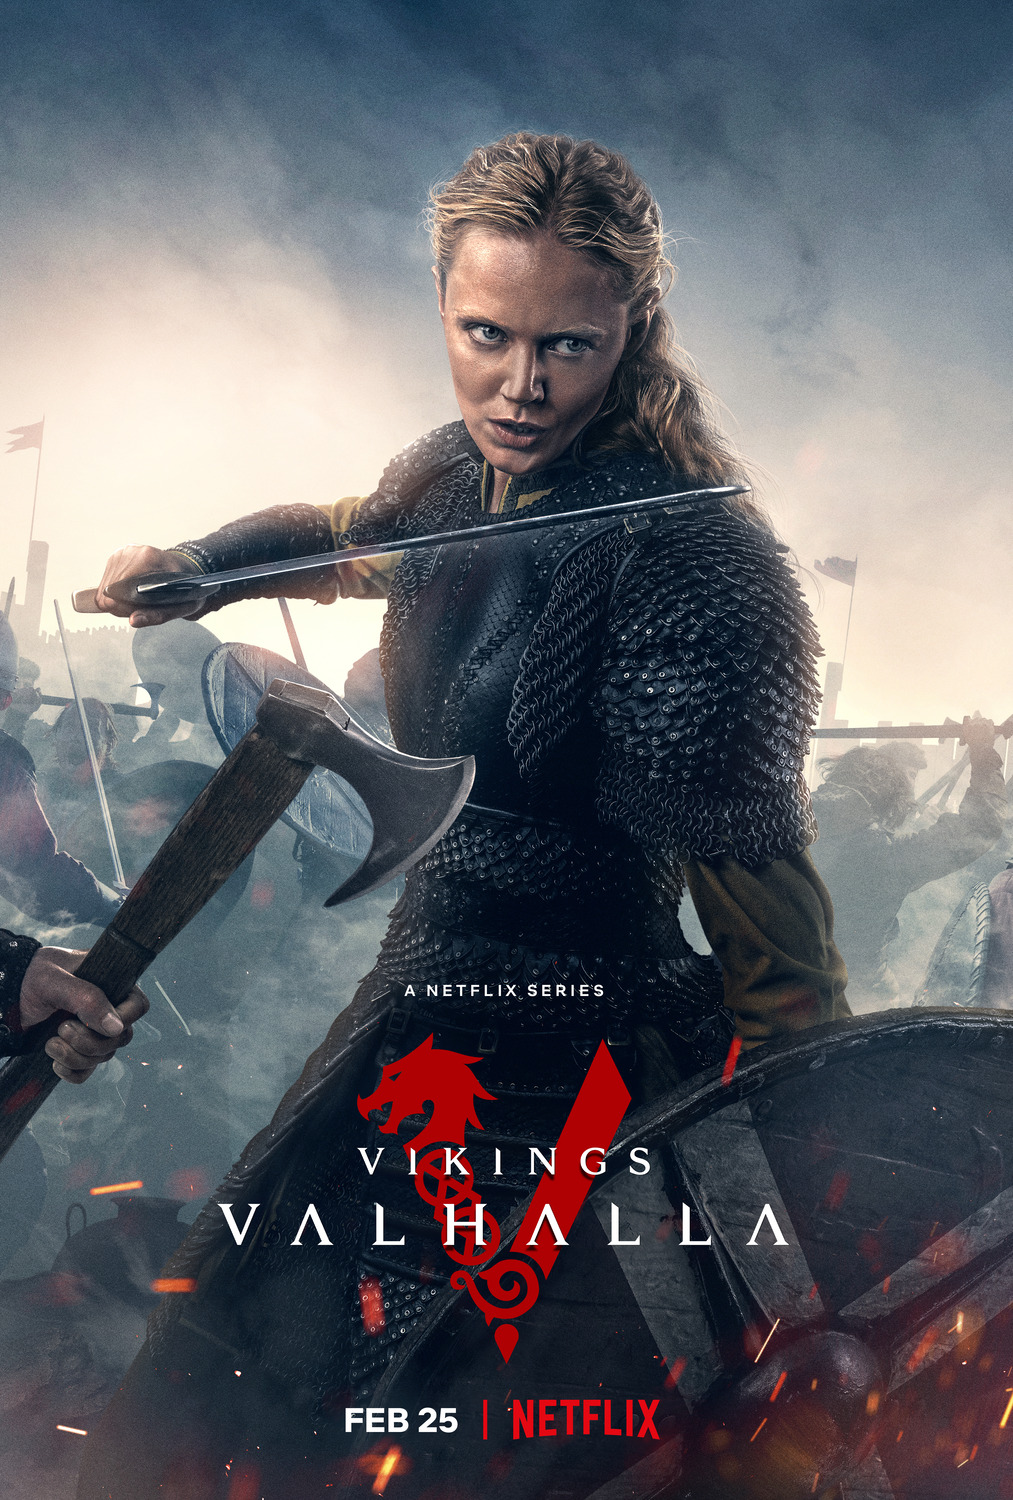 Vikings: Valhalla (#4 of 18): Extra Large Movie Poster Image - IMP Awards